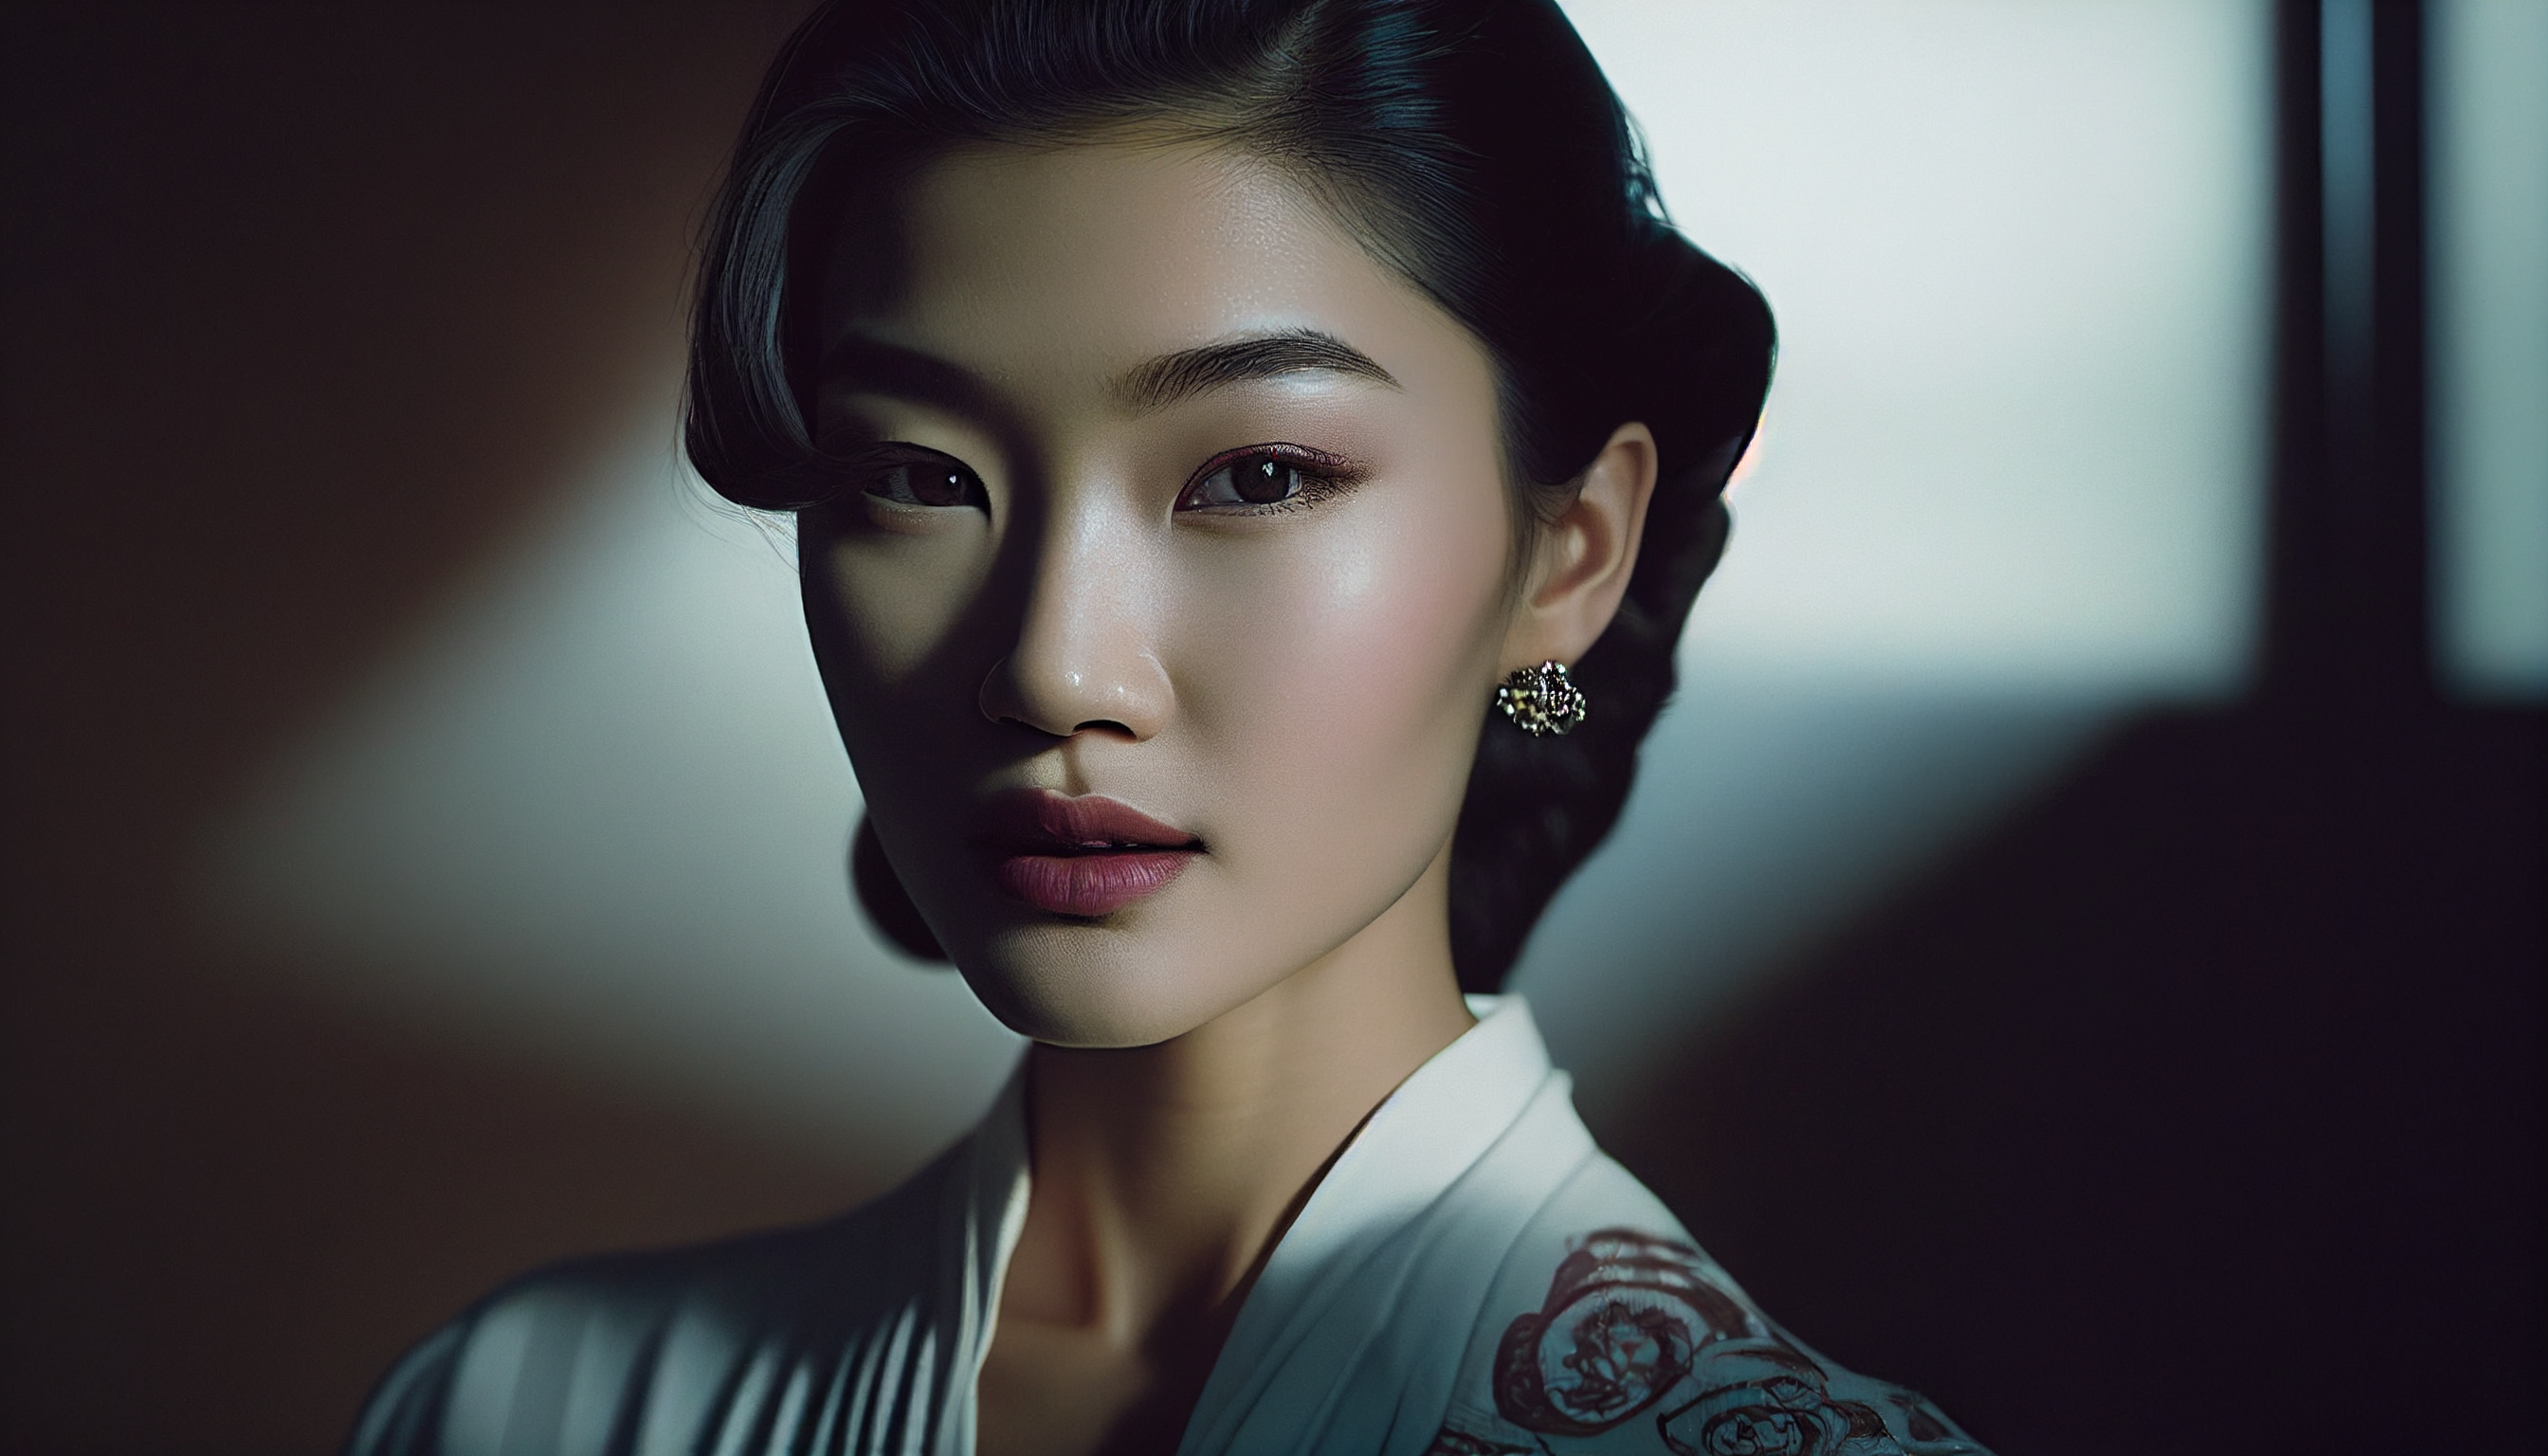 General 2688x1536 Asian asian clothing women face AI art